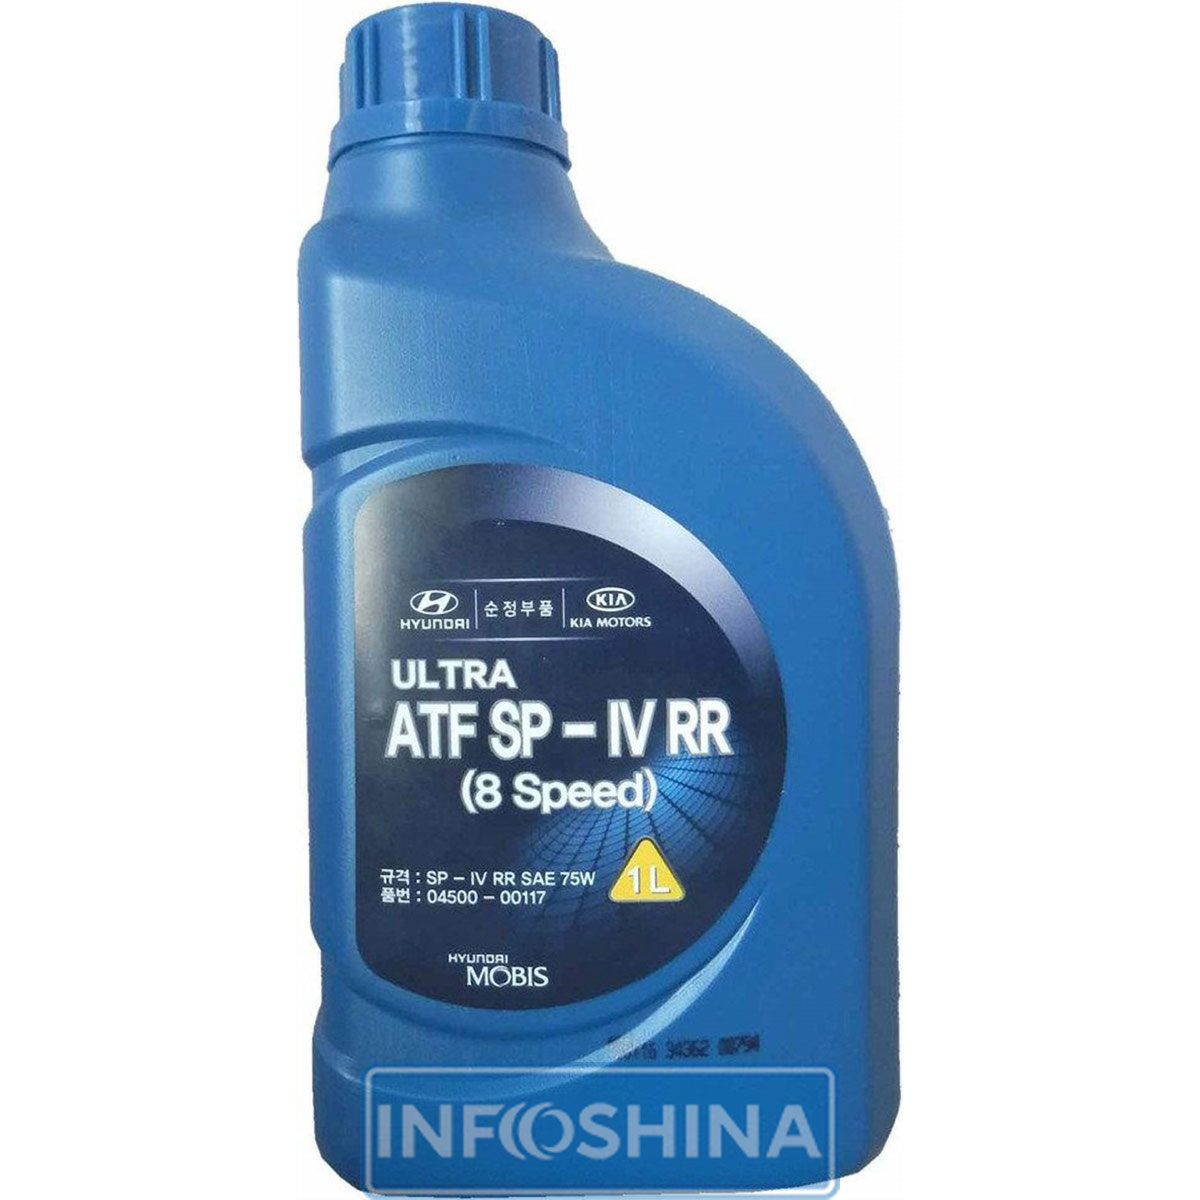 Купить масло Mobis Ultra ATF SP-IV RR